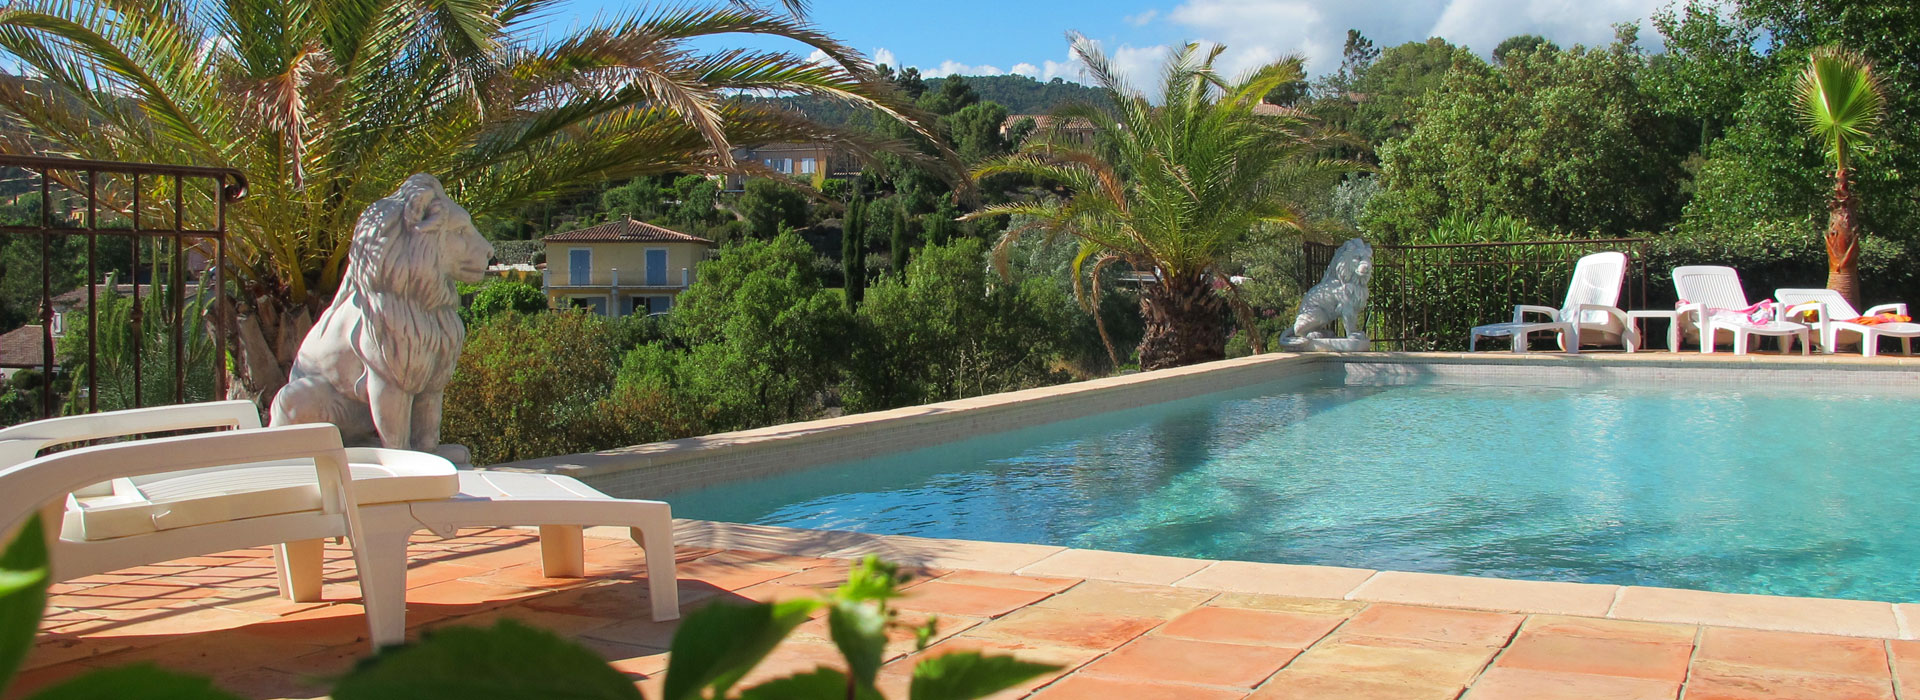 Villa Soleil des Adrets - Côte d'Azur - Frankreich